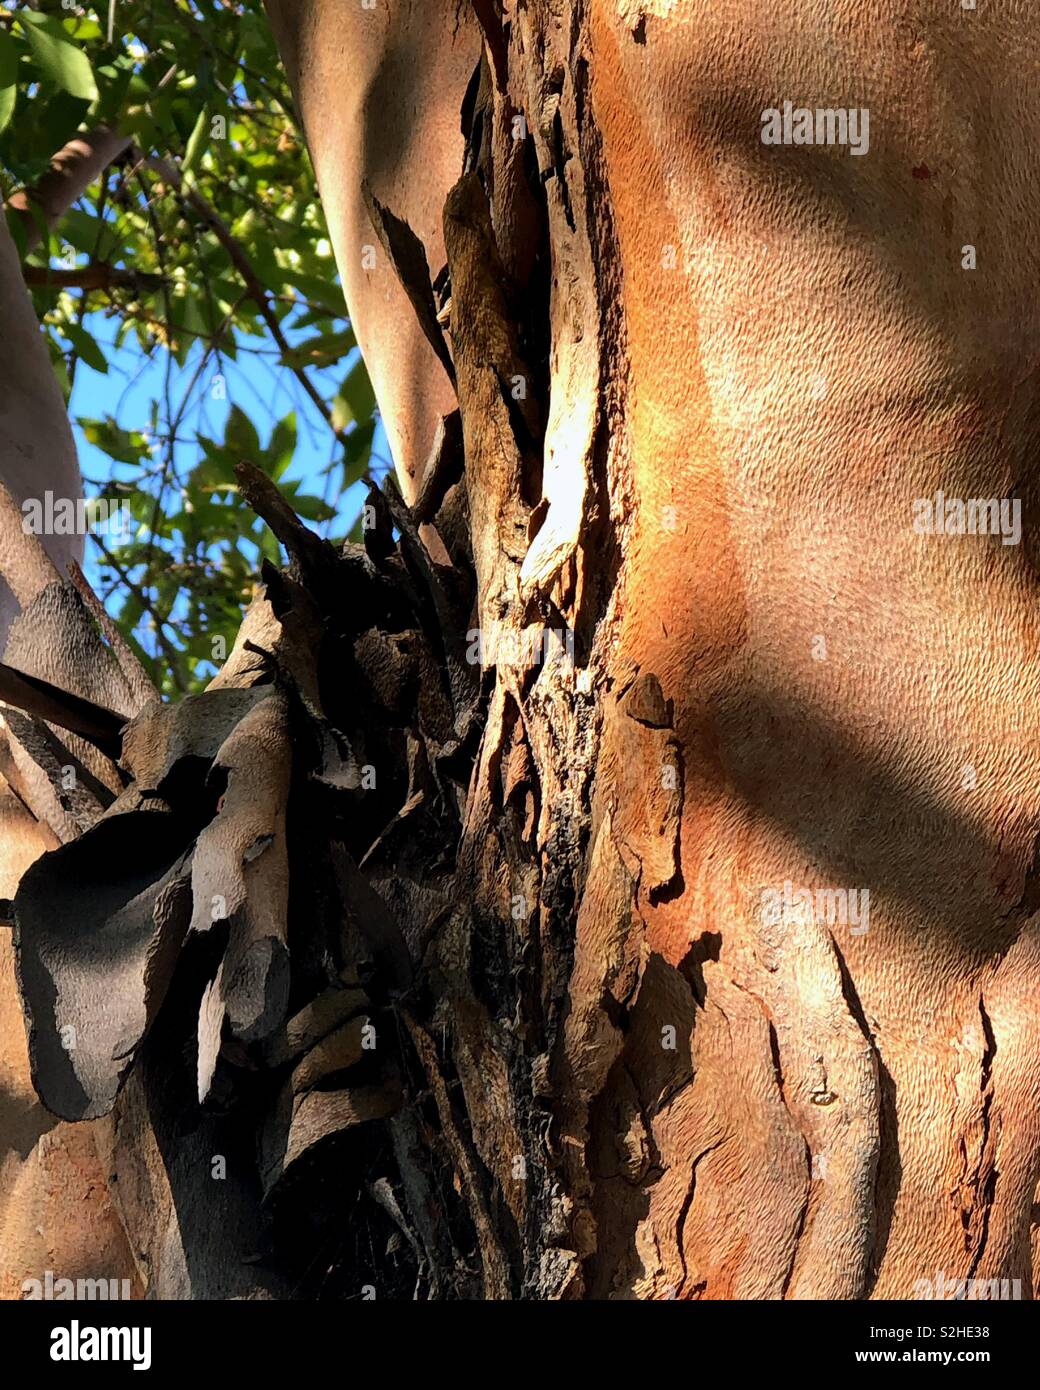 Der Eukalyptusbaum, glatte Oberflächen und Entfaltung Rinde sind Wahrzeichen von Los Angeles. Die spät nach Sonne spielt über die Oberfläche und steigert den Kiesstrand Textur. Stockfoto